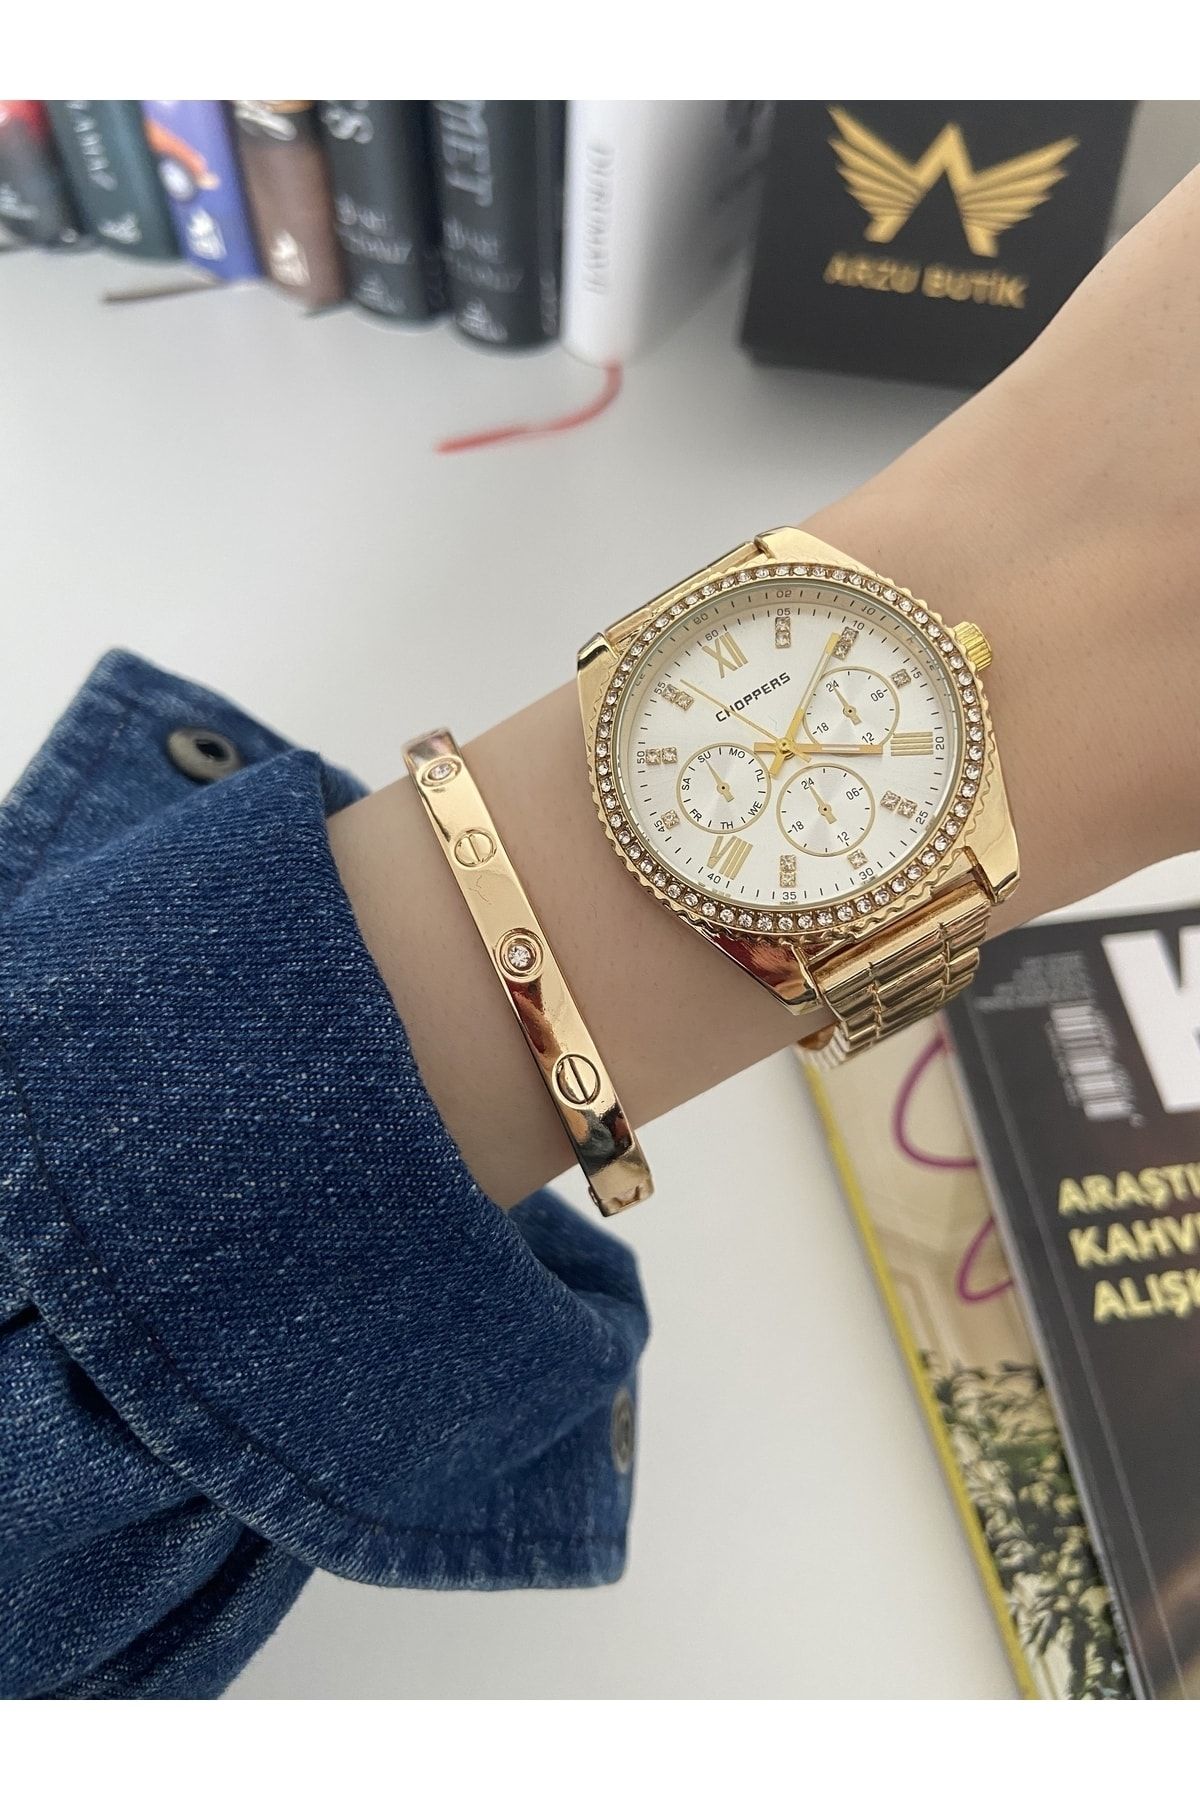 Arzu Butik Kadın kol saati taşlı metal kordon gold renk & yanındaki bileklik ile beraber